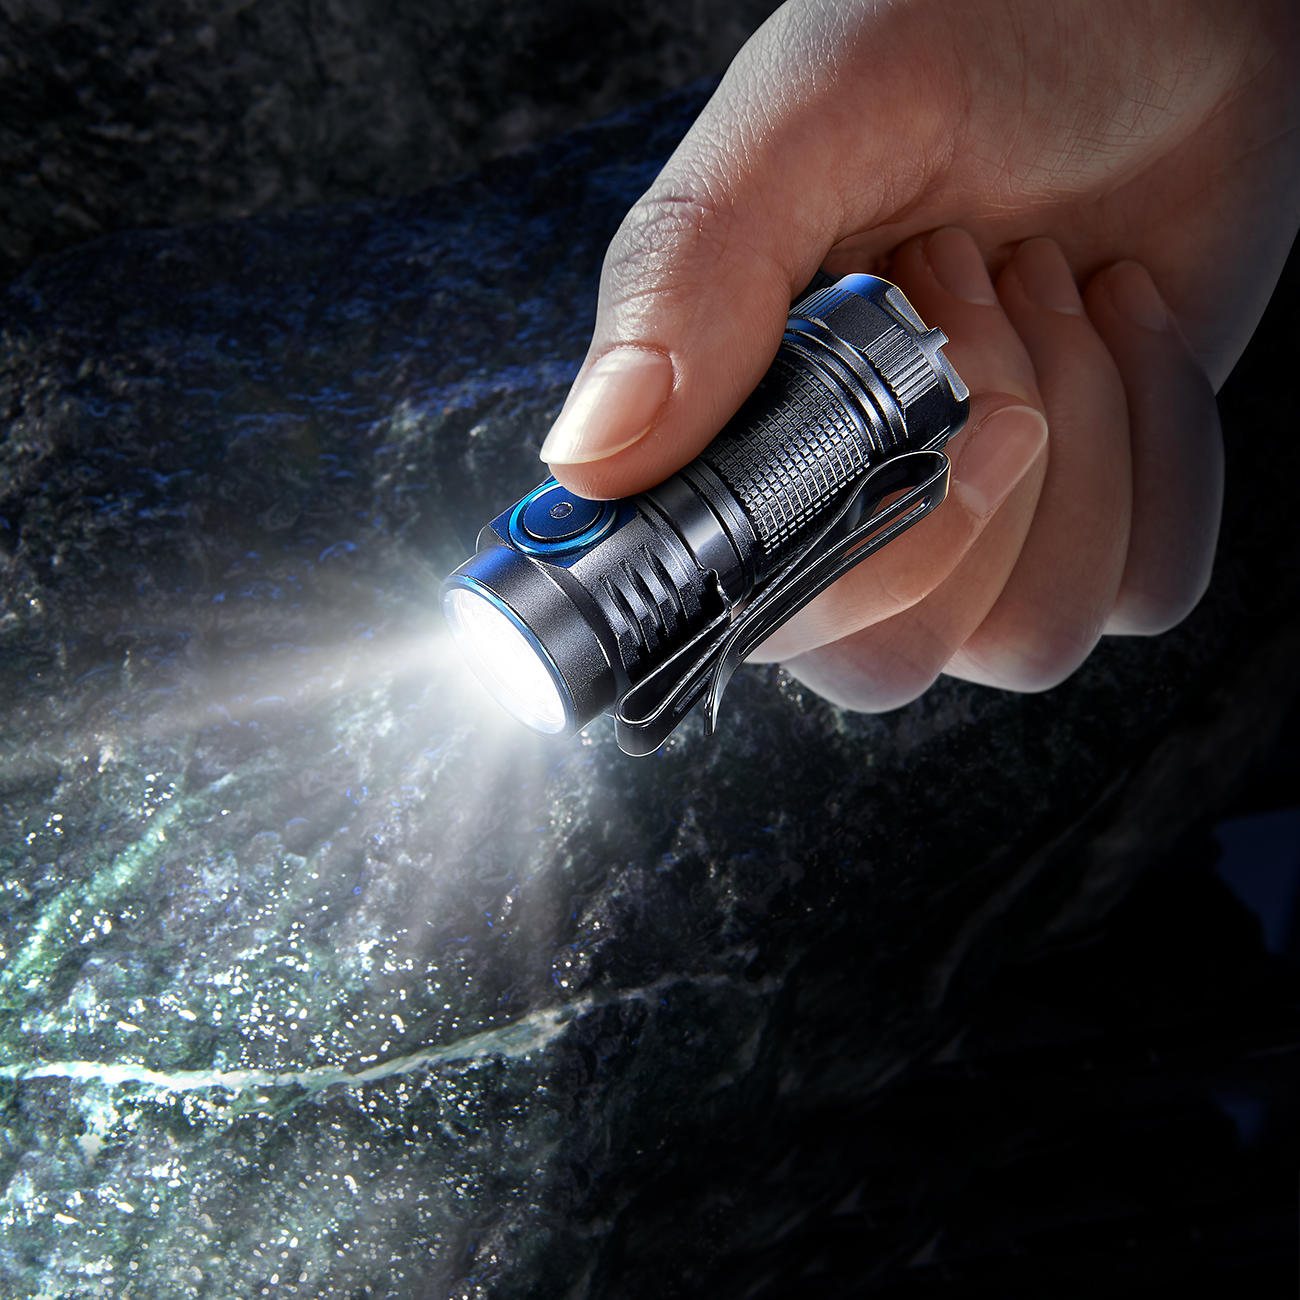 TrustFire MC1 1000 Lumen Mini-Taschenlampe online kaufen